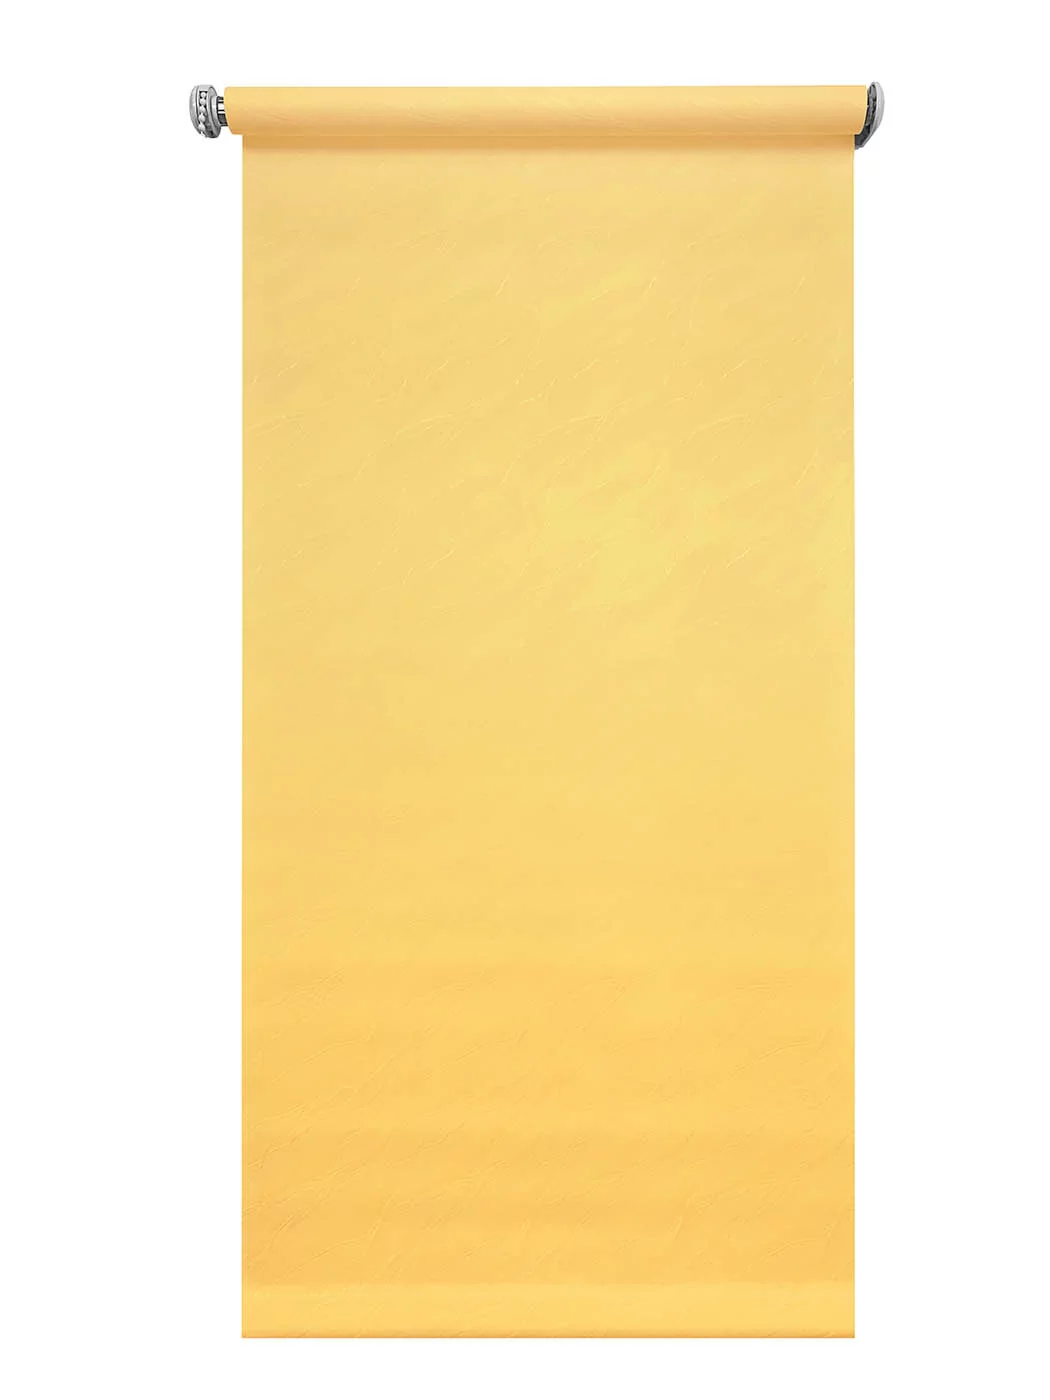 Рулонная штора "Лотос" Желтый 4